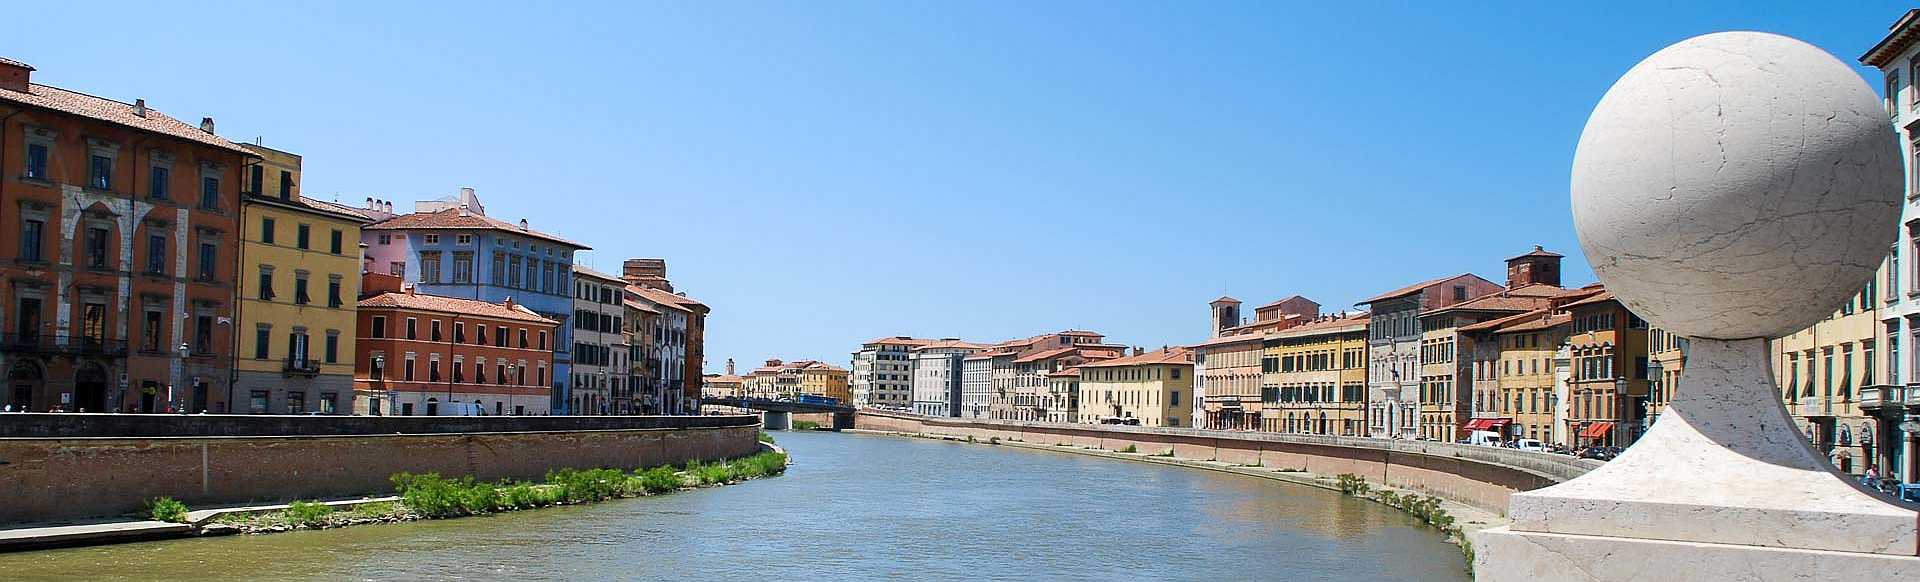 Der Fluss Arno durchfließt Pisa in einem Bogen